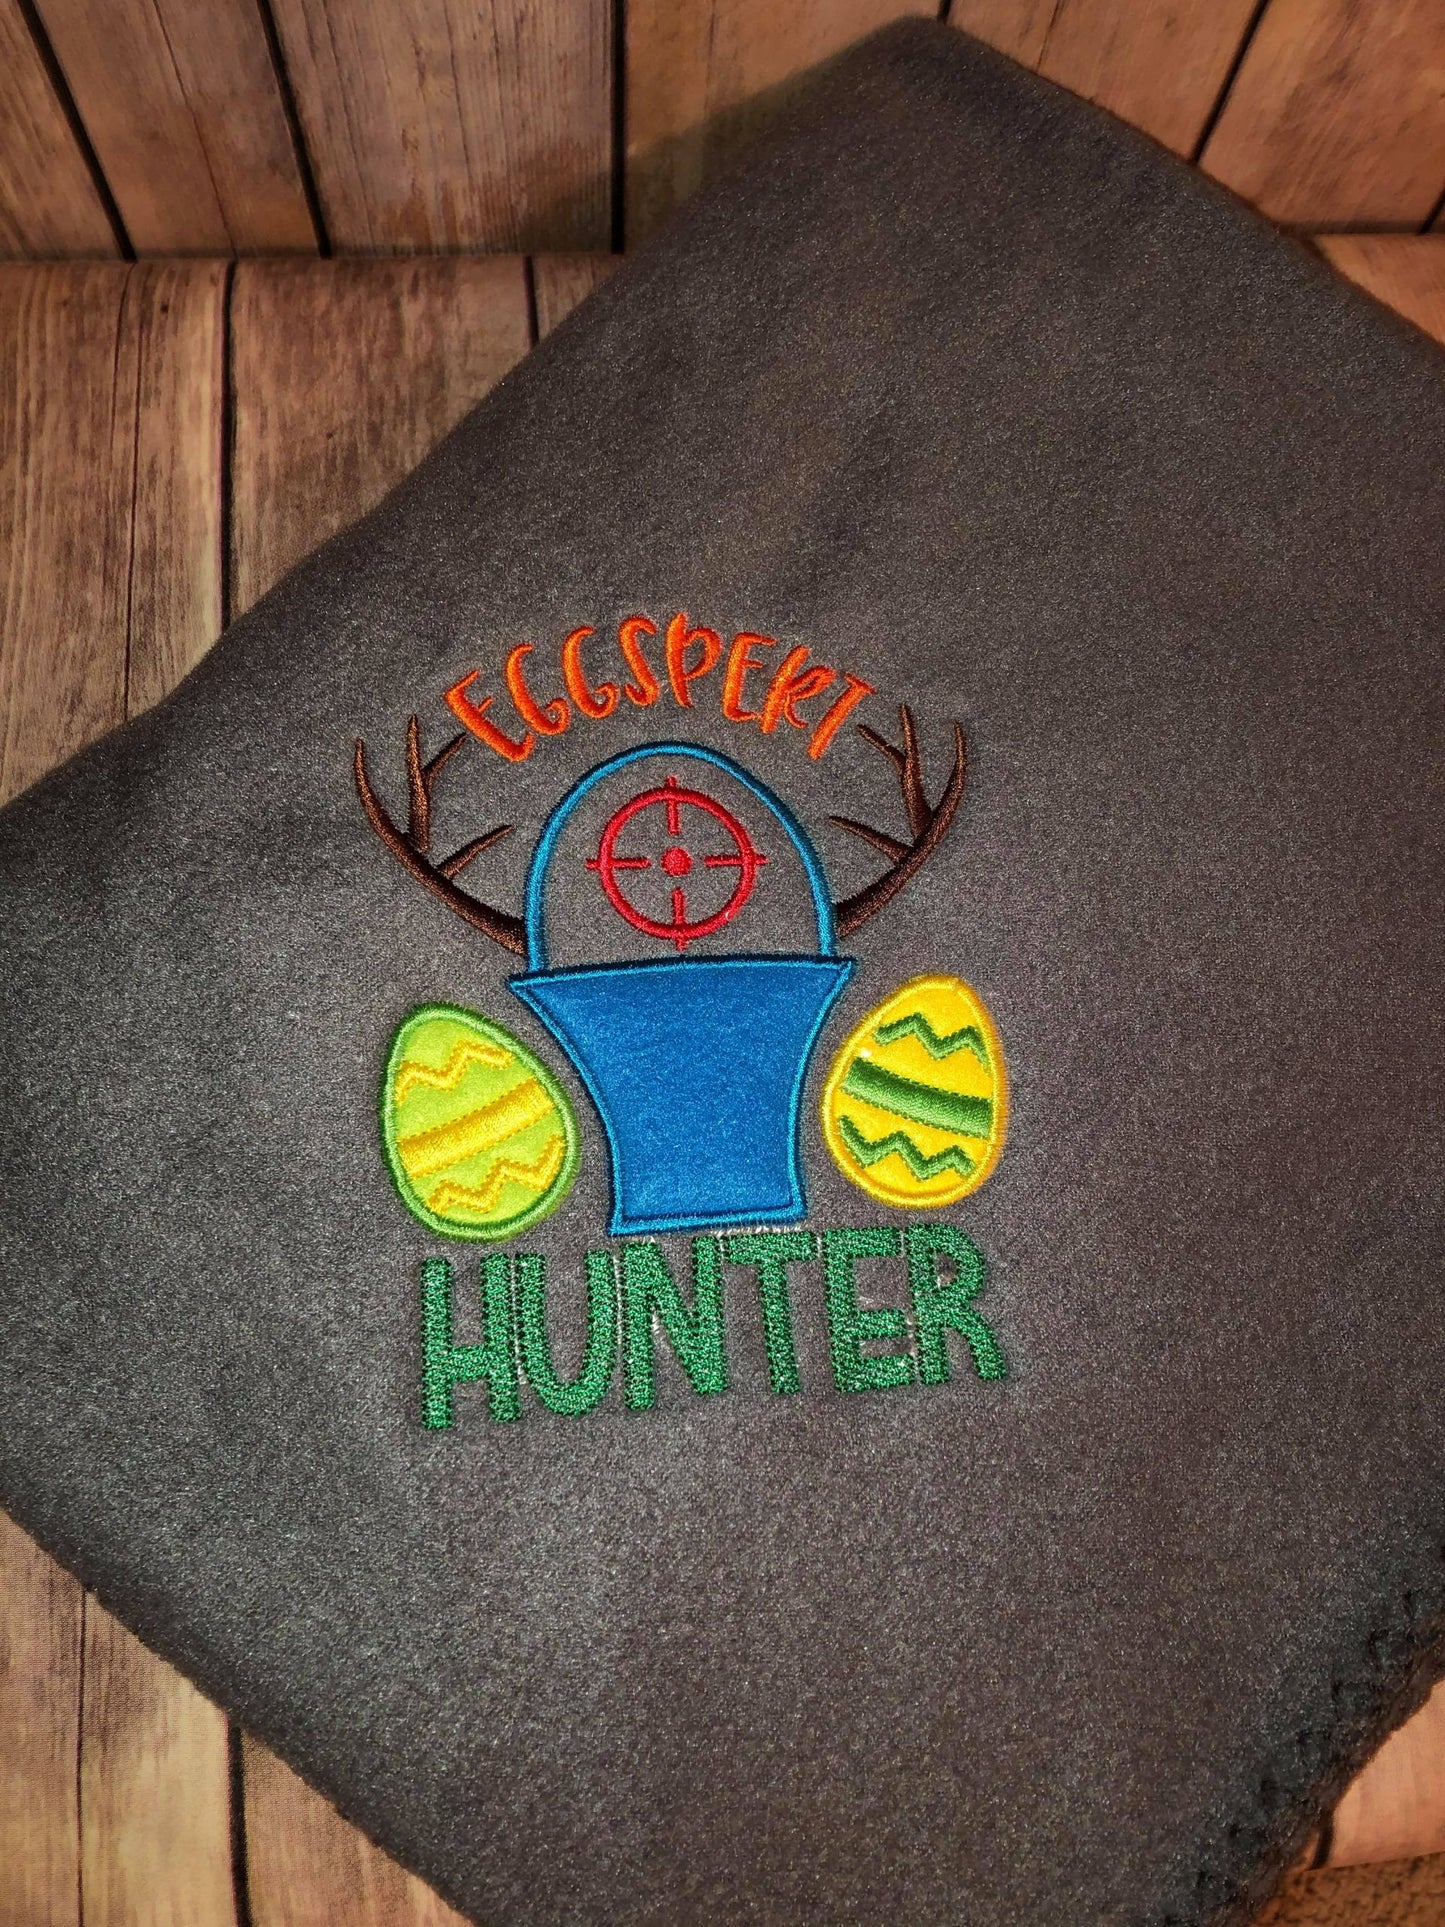 Eggspert Hunter - 2 sizes- Digital Embroidery Design